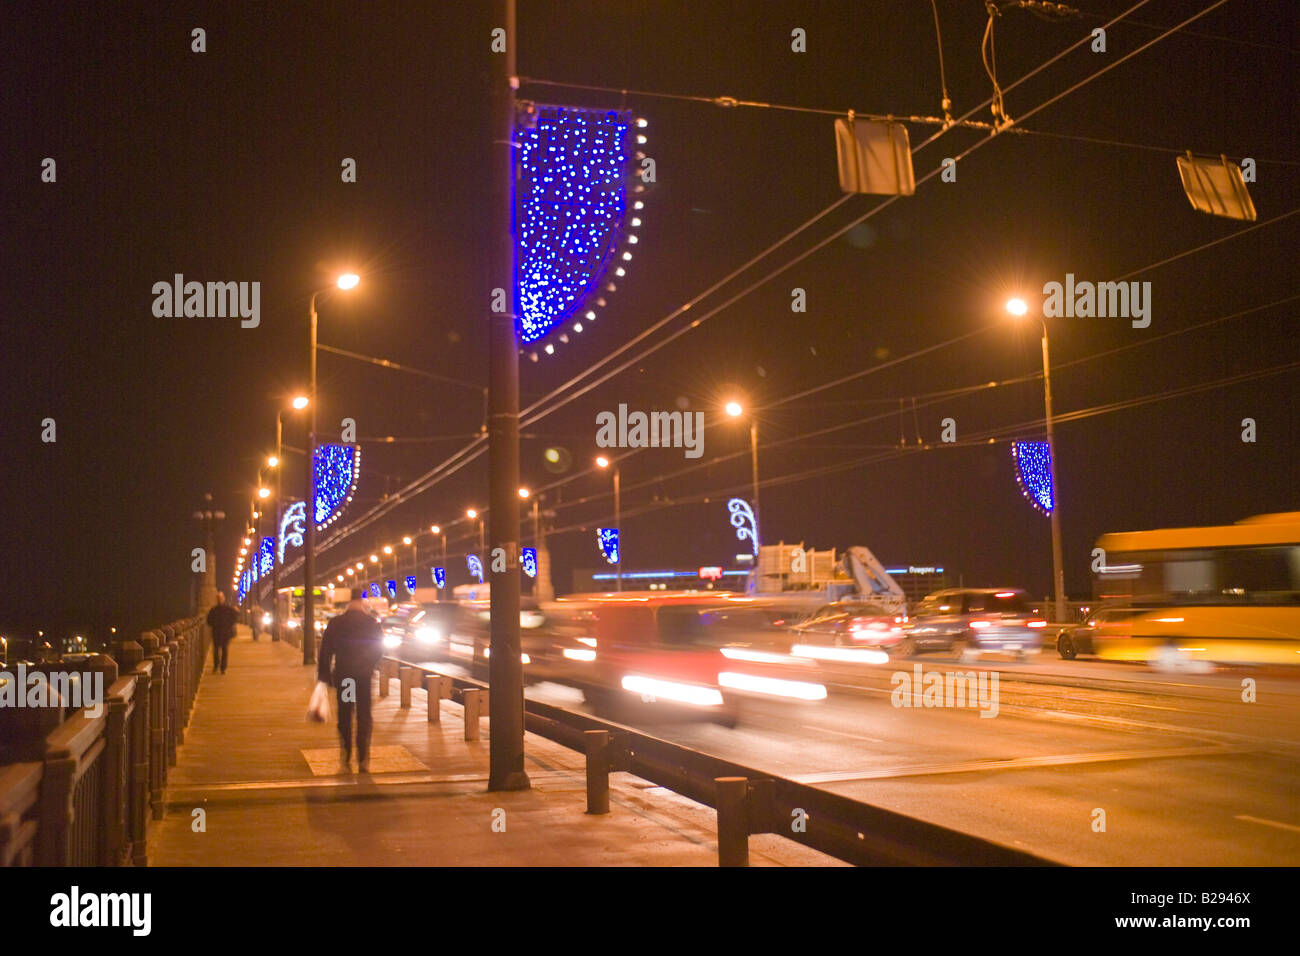 Akmens kippt überbrücken Riga Lettland Datum 11 02 2008 Ref ZB693 110474 0068 obligatorische CREDIT Welt Bilder Photoshot Stockfoto